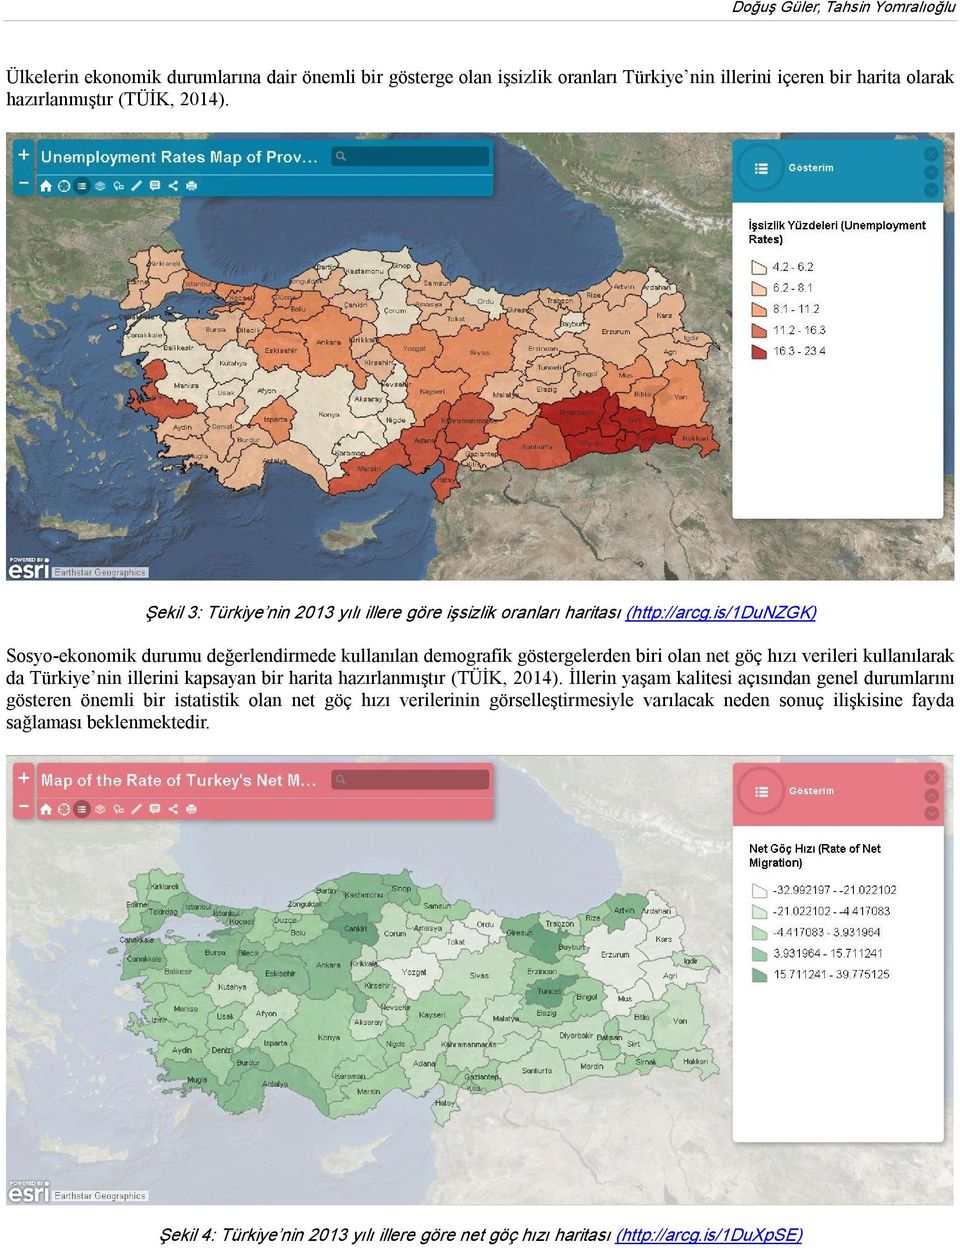 is/1dunzgk) Sosyo ekonomik durumu değerlendirmede kullanılan demografik göstergelerden biri olan net göç hızı verileri kullanılarak da Türkiye nin illerini kapsayan bir harita